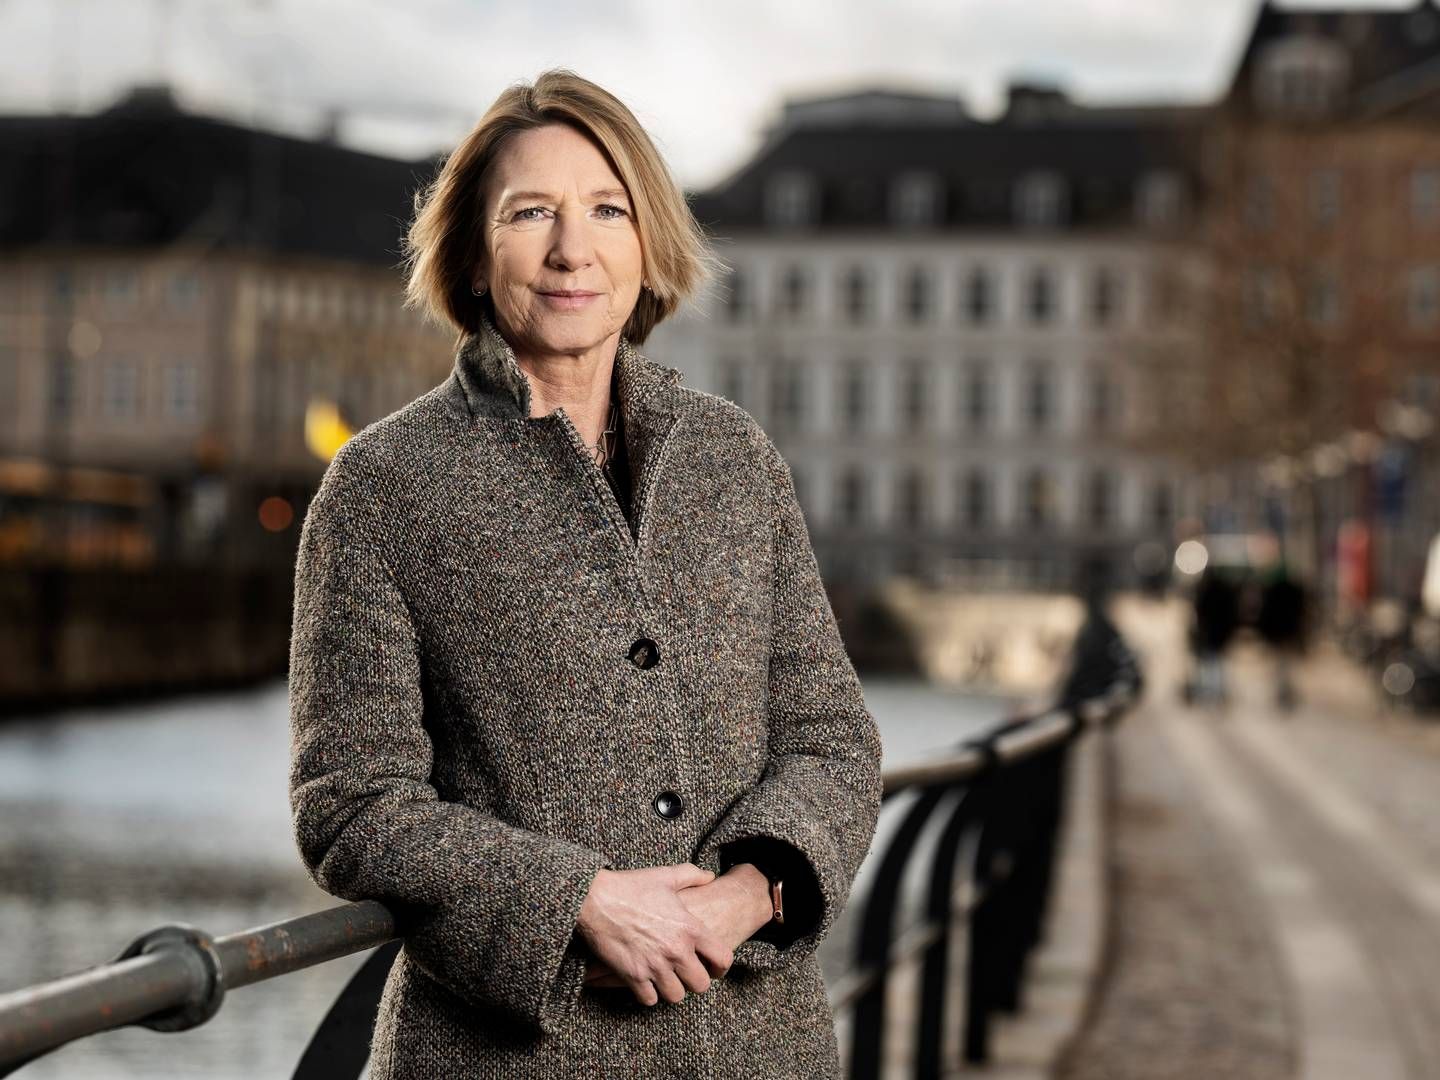 "Det ser ud til, at ledigheden ikke falder helt så meget som tidligere år," siger Linda Garlov, direktør i AJKS. | Foto: Jakob Carlsen